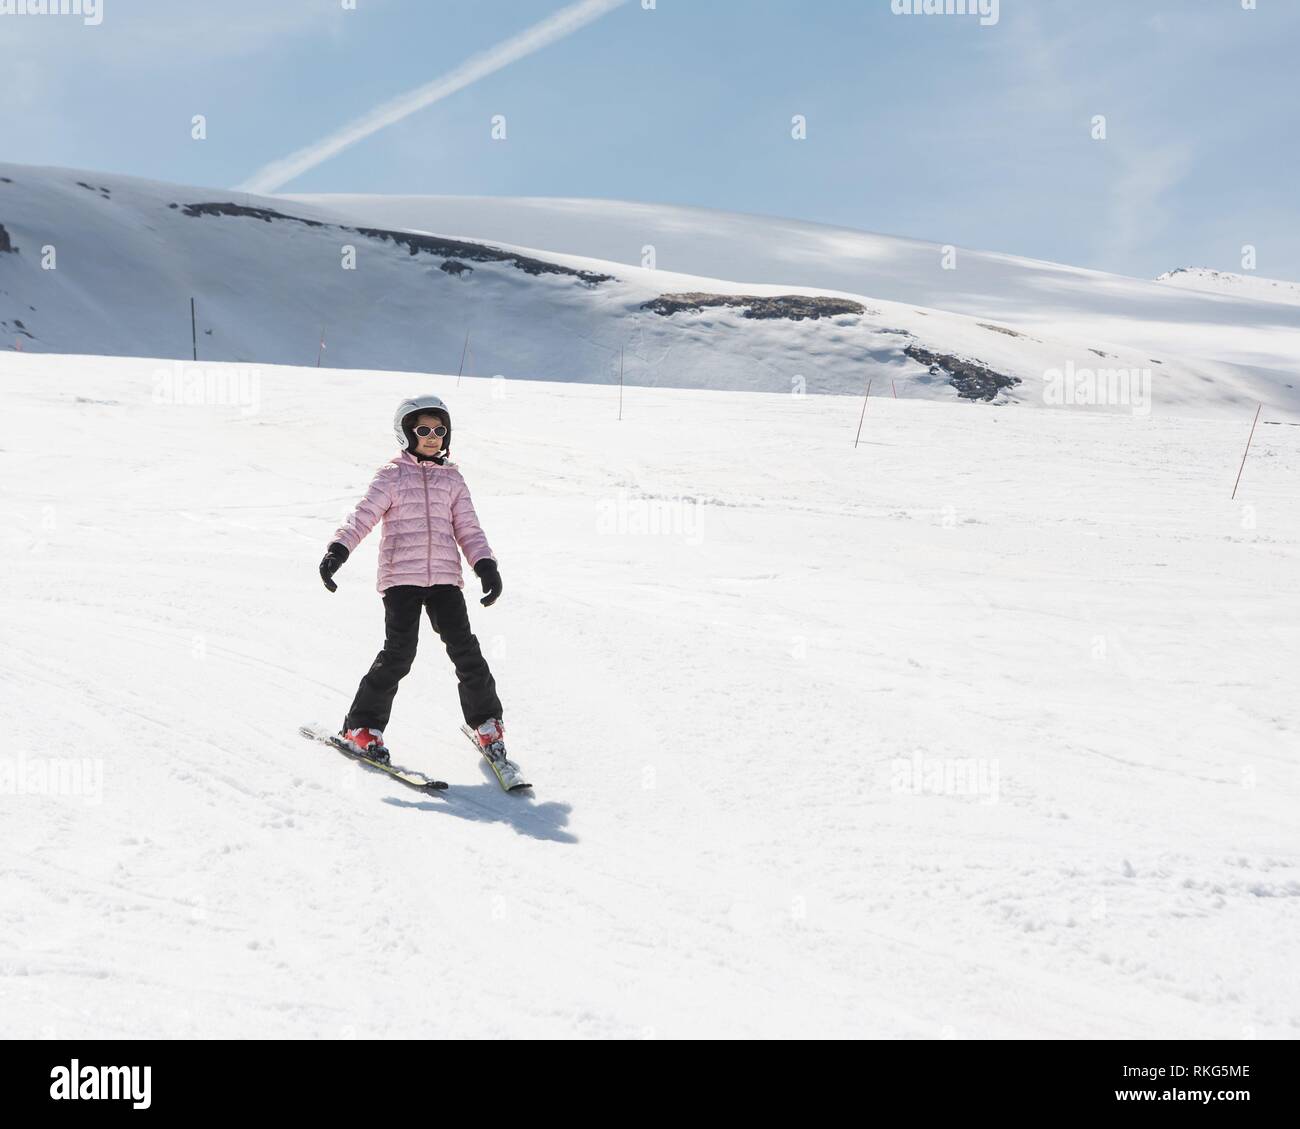 Beginner little girl learning to ski. Stock Photo